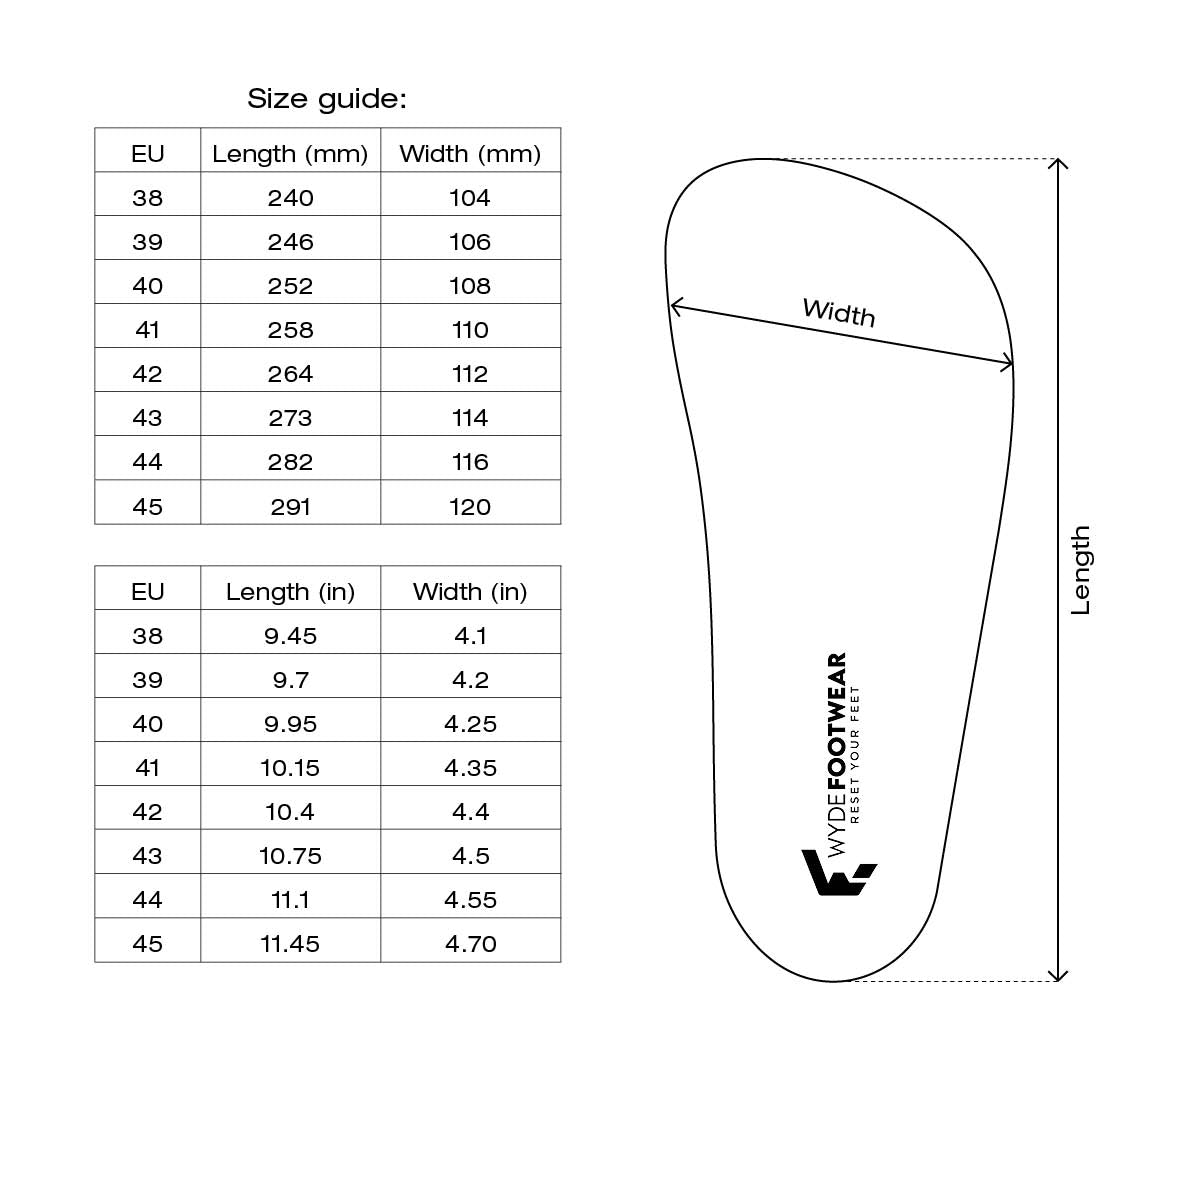 Size Guide - Footwear